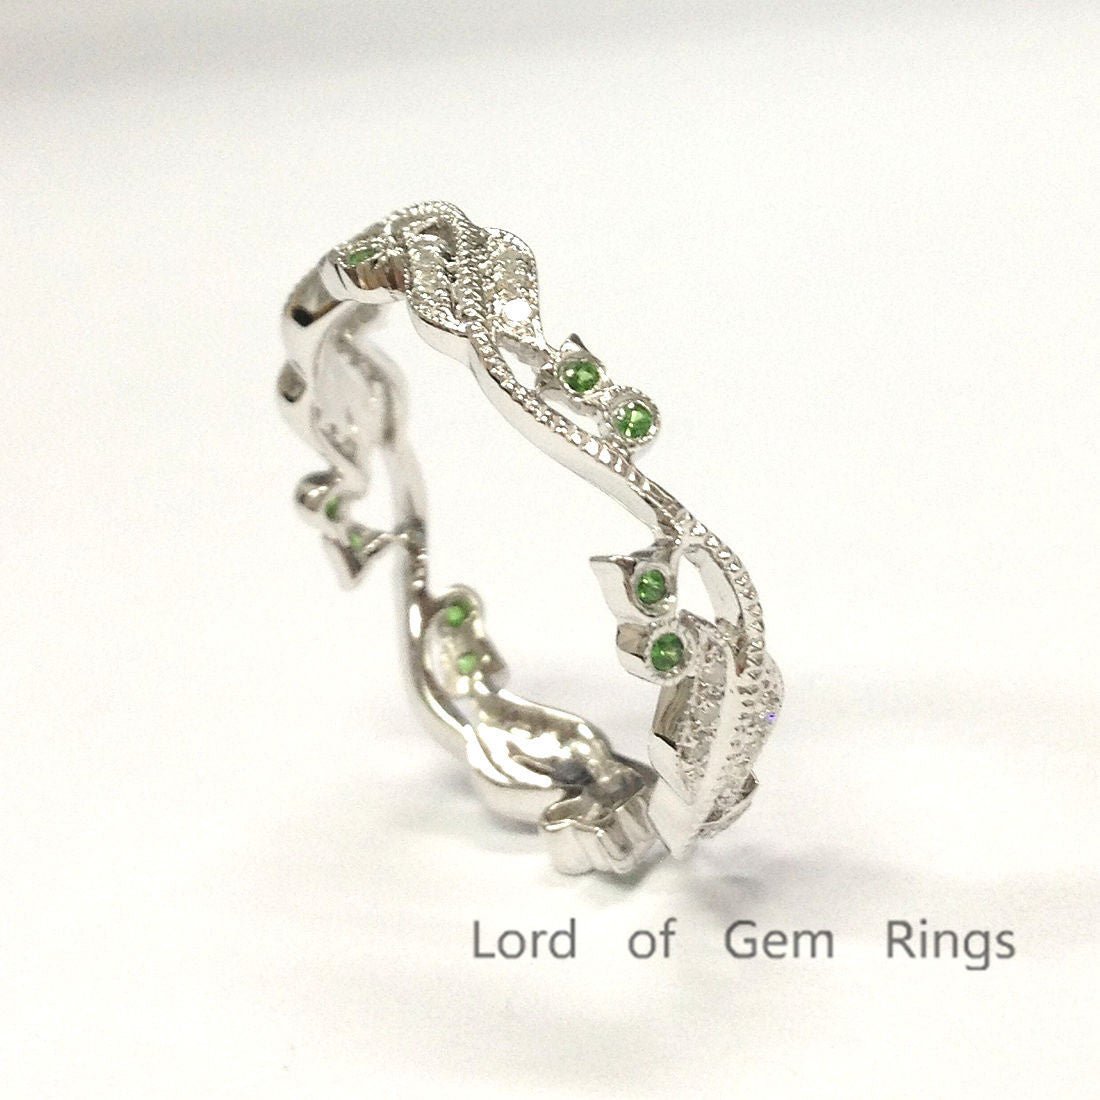 Diamonds Tsavorite(Garnet) Leaf Vine Ring 14K White Gold - Lord of Gem Rings